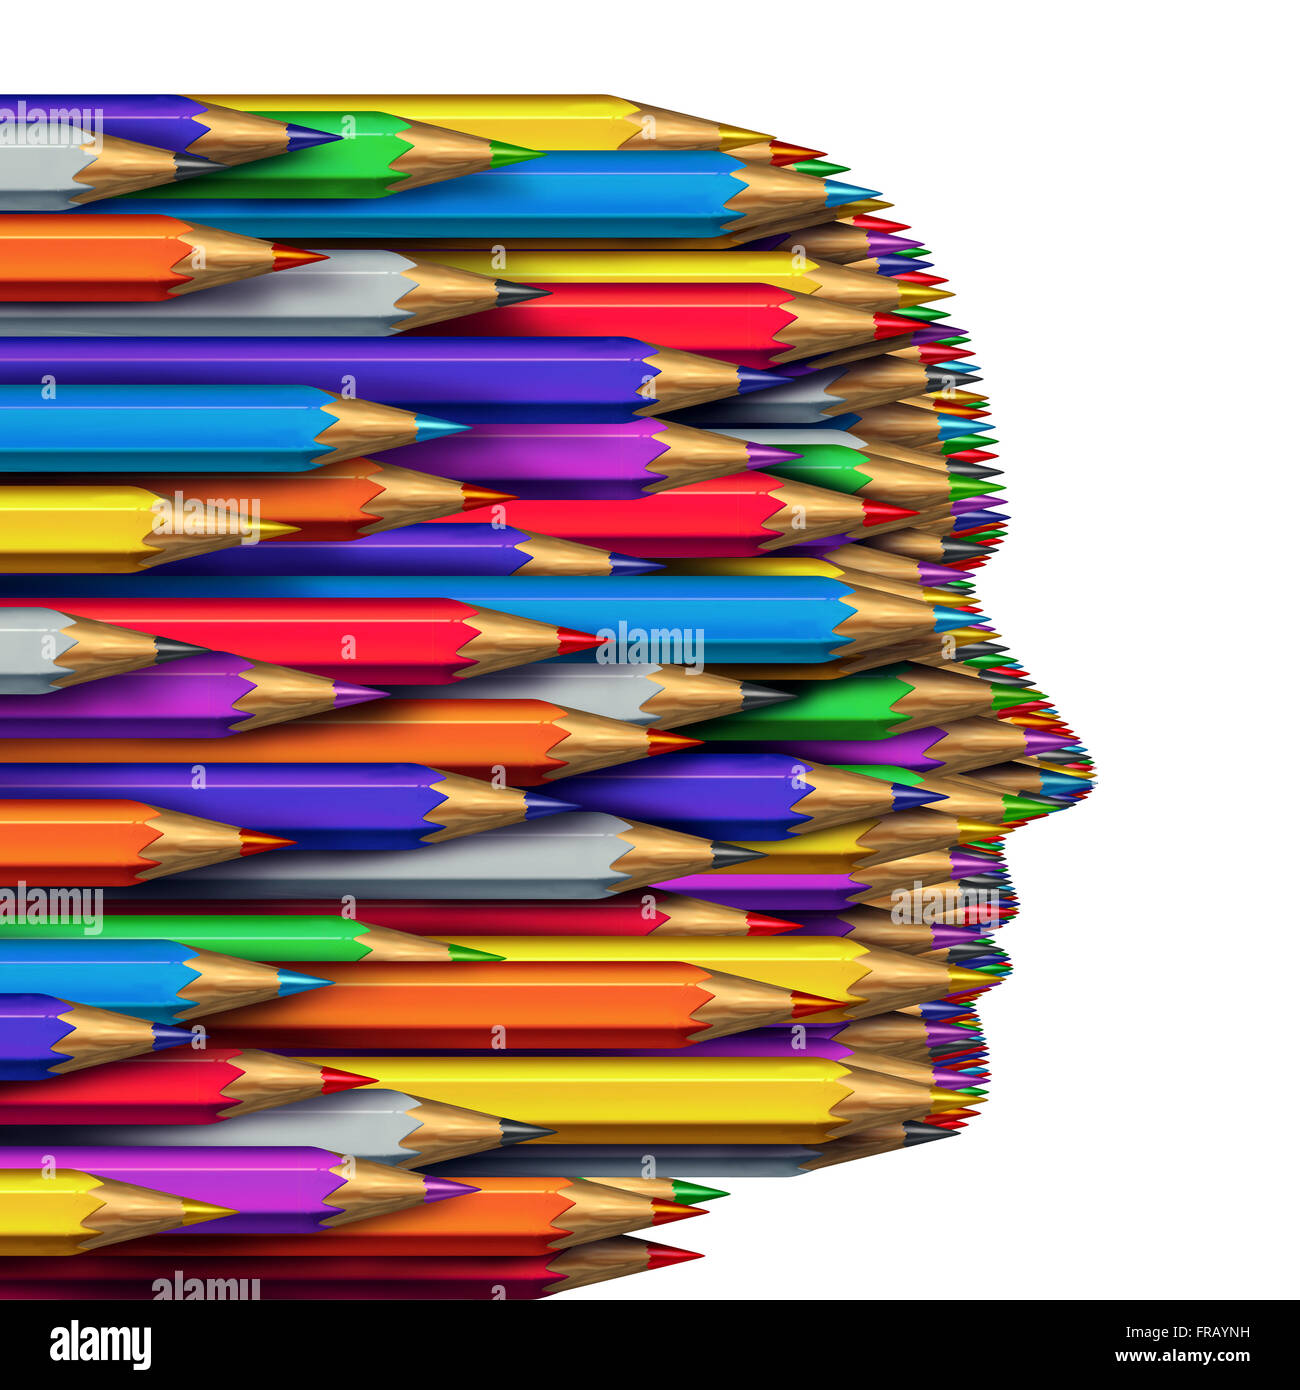 Concetto di idee in un business come simbolo del pensiero creativo come un gruppo di matite colorate raggruppate insieme per formare una testa umana come la creatività e la fantasia simbolo isolato su uno sfondo bianco. Foto Stock